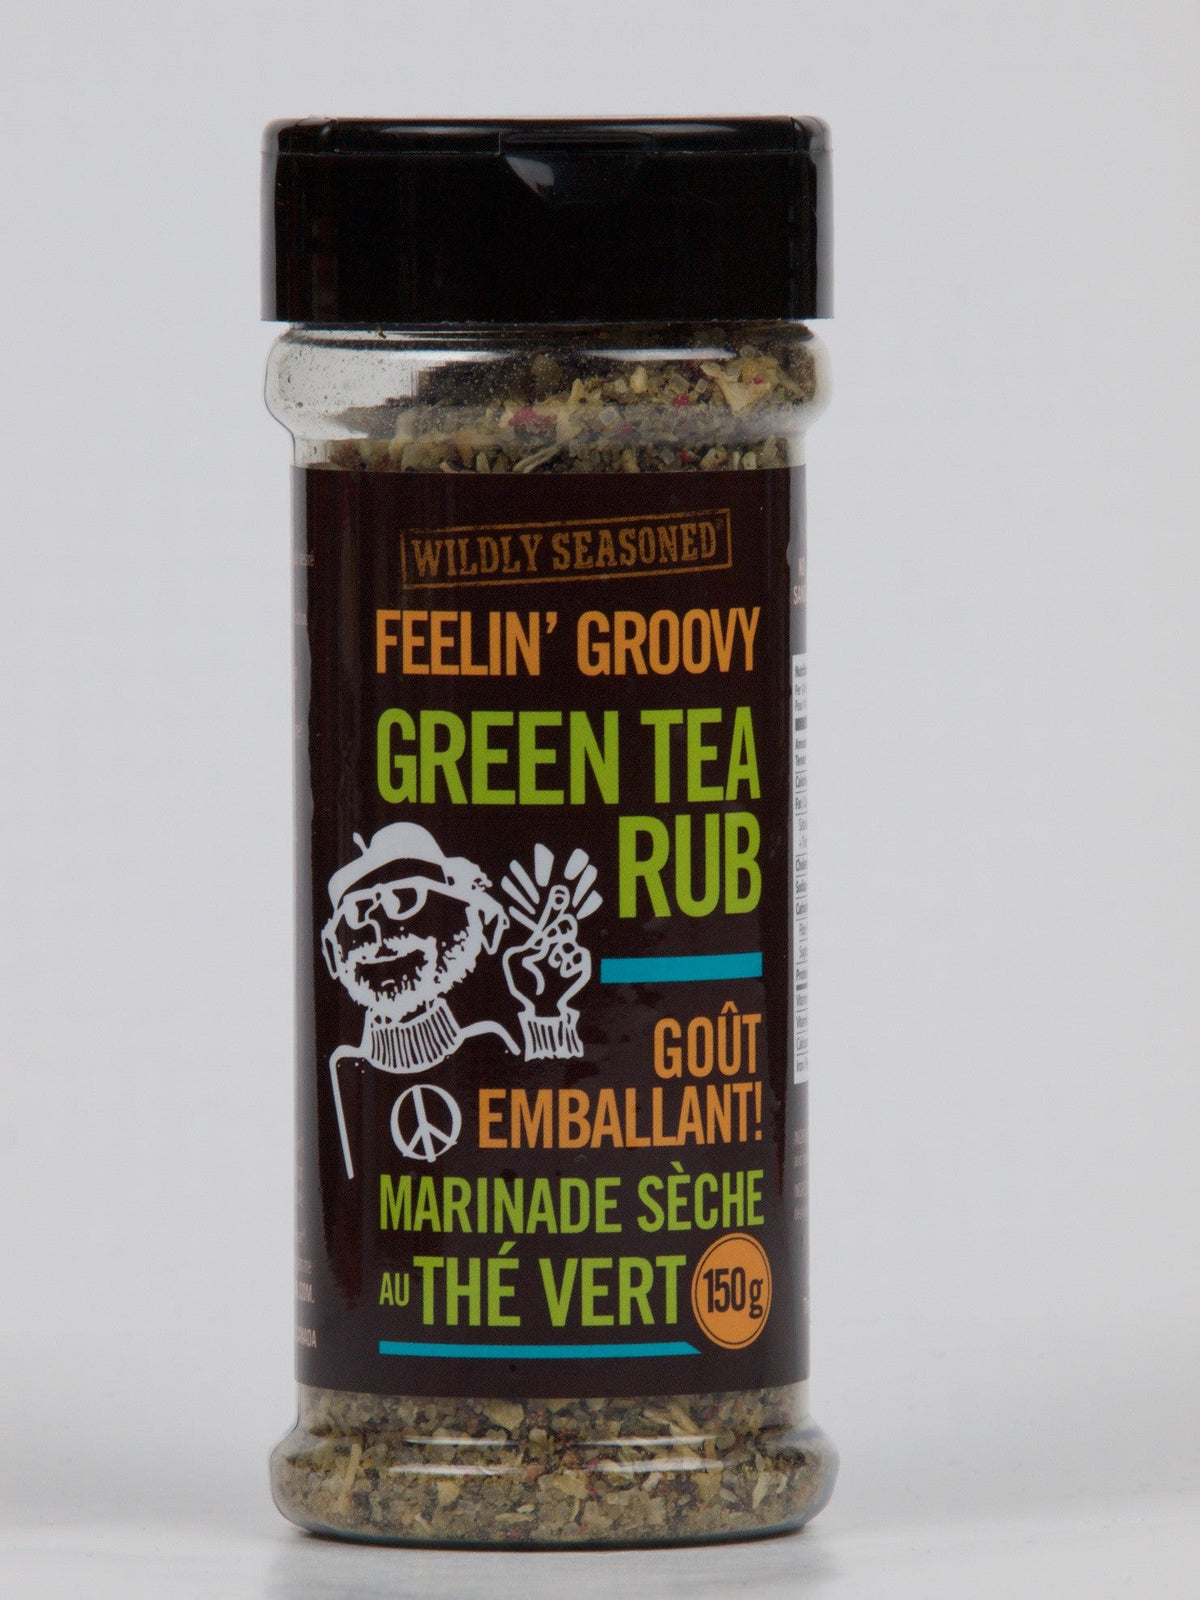 Wildly Seasoned Feelin' Groovy Green Tea Rub